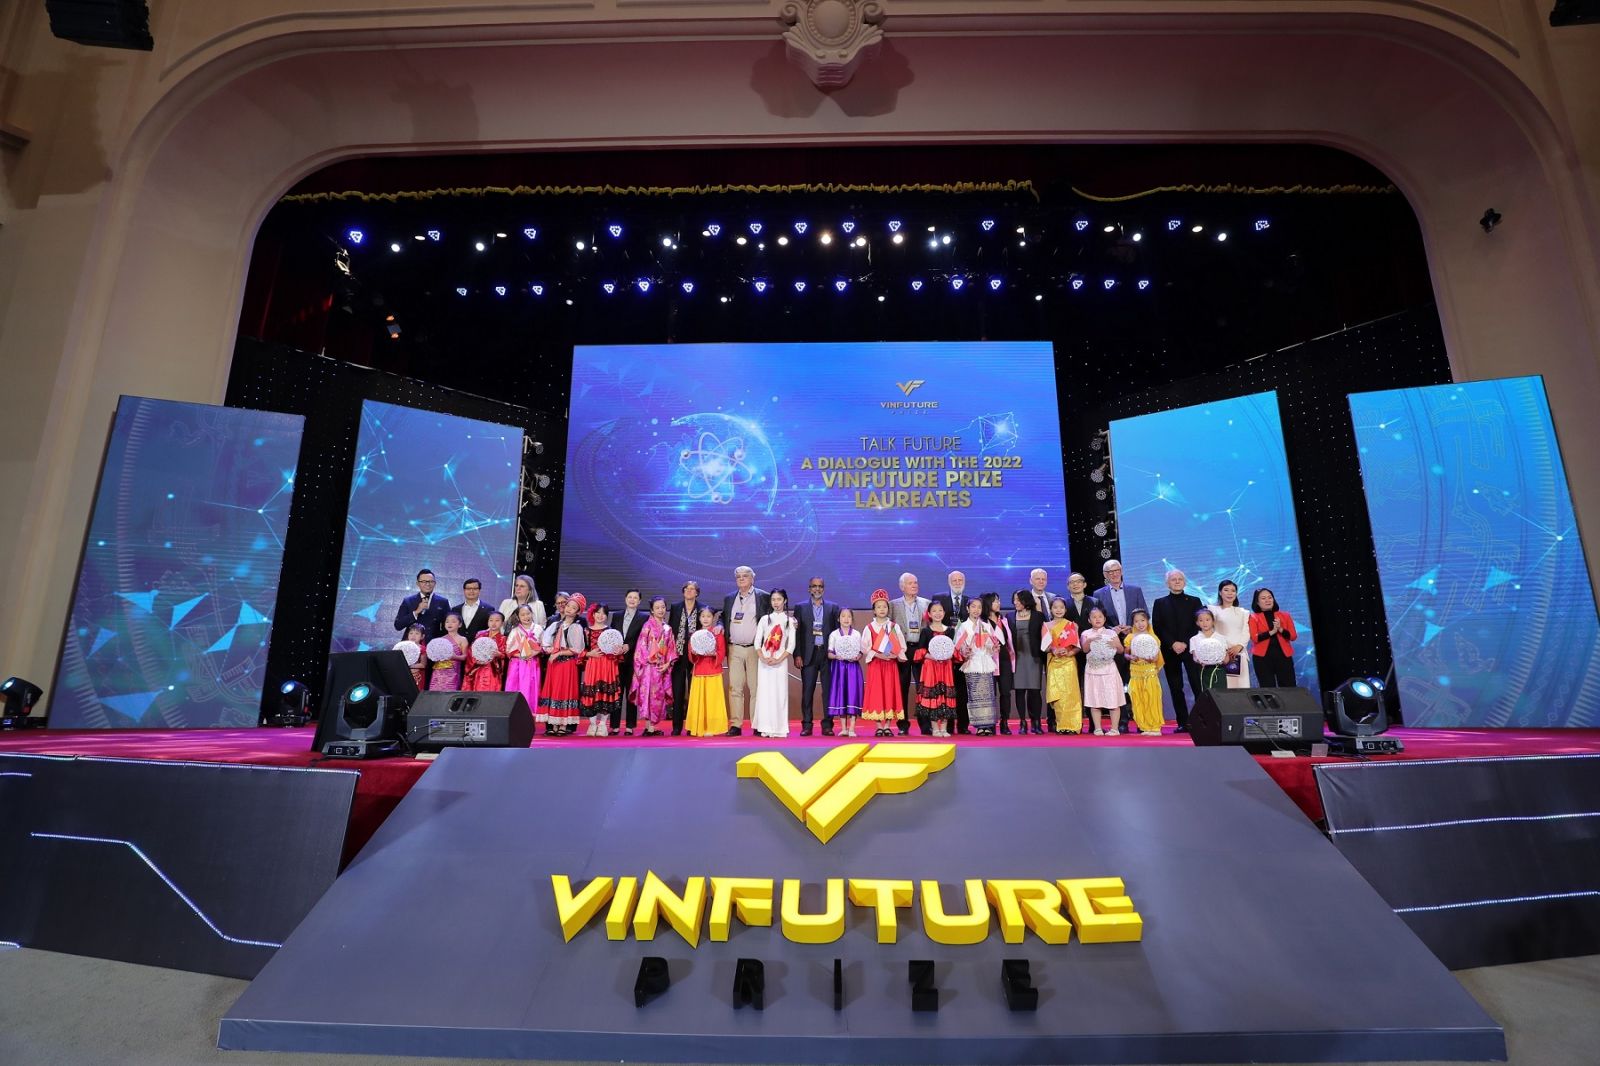 Các chủ nhân Giải thưởng giao lưu với khán giả sau lễ trao giải VinFuture 2022